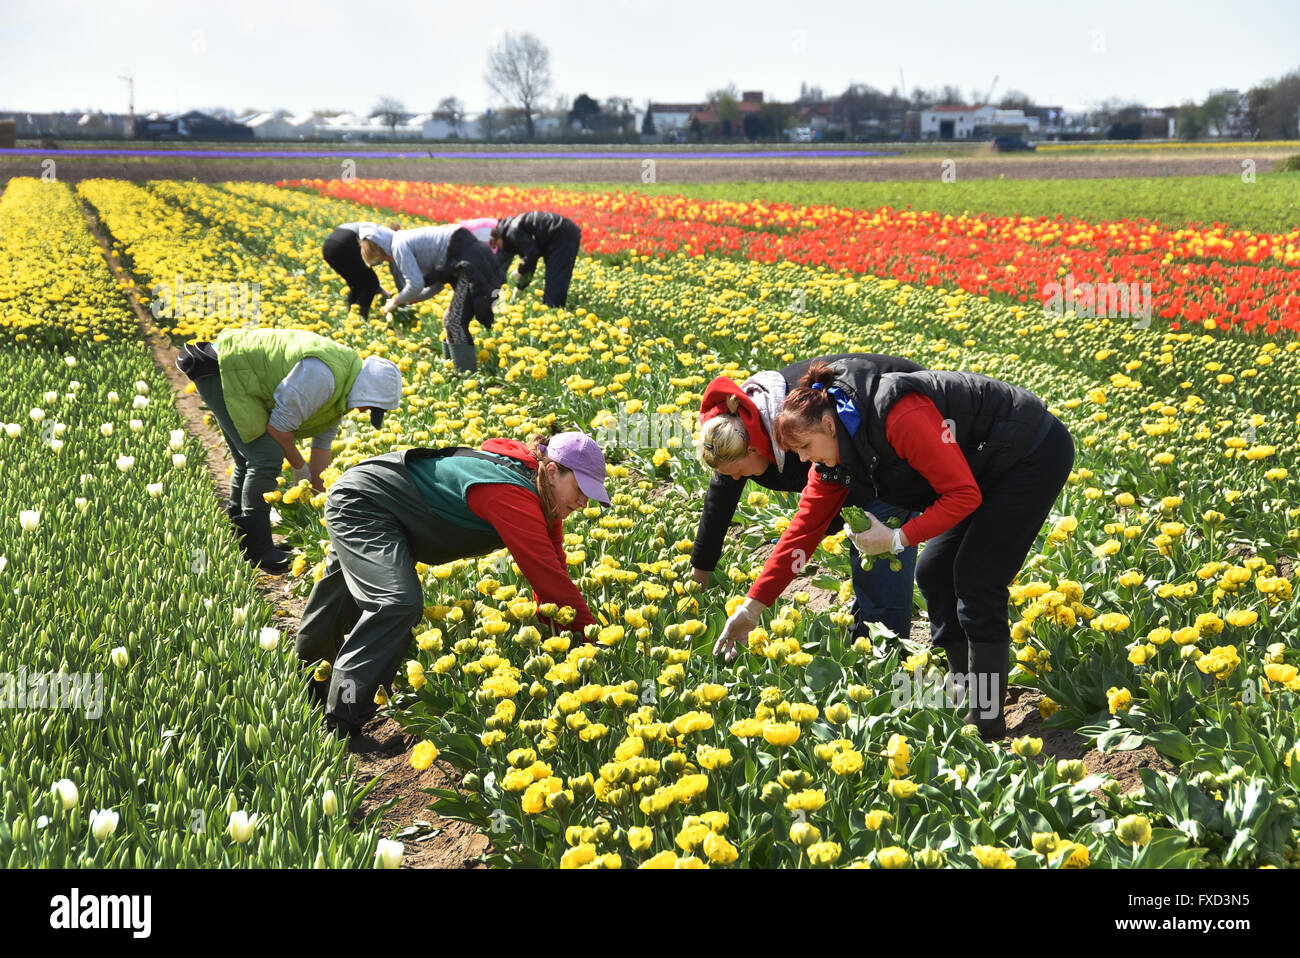 Polnische weibliche östlichen europäischen Arbeitnehmer Tulpen und Blumen Feld Äckern in der Nähe von Keukenhof Lisse Sassenheim zwischen Leiden, Haarlem und Amsterdam Stockfoto